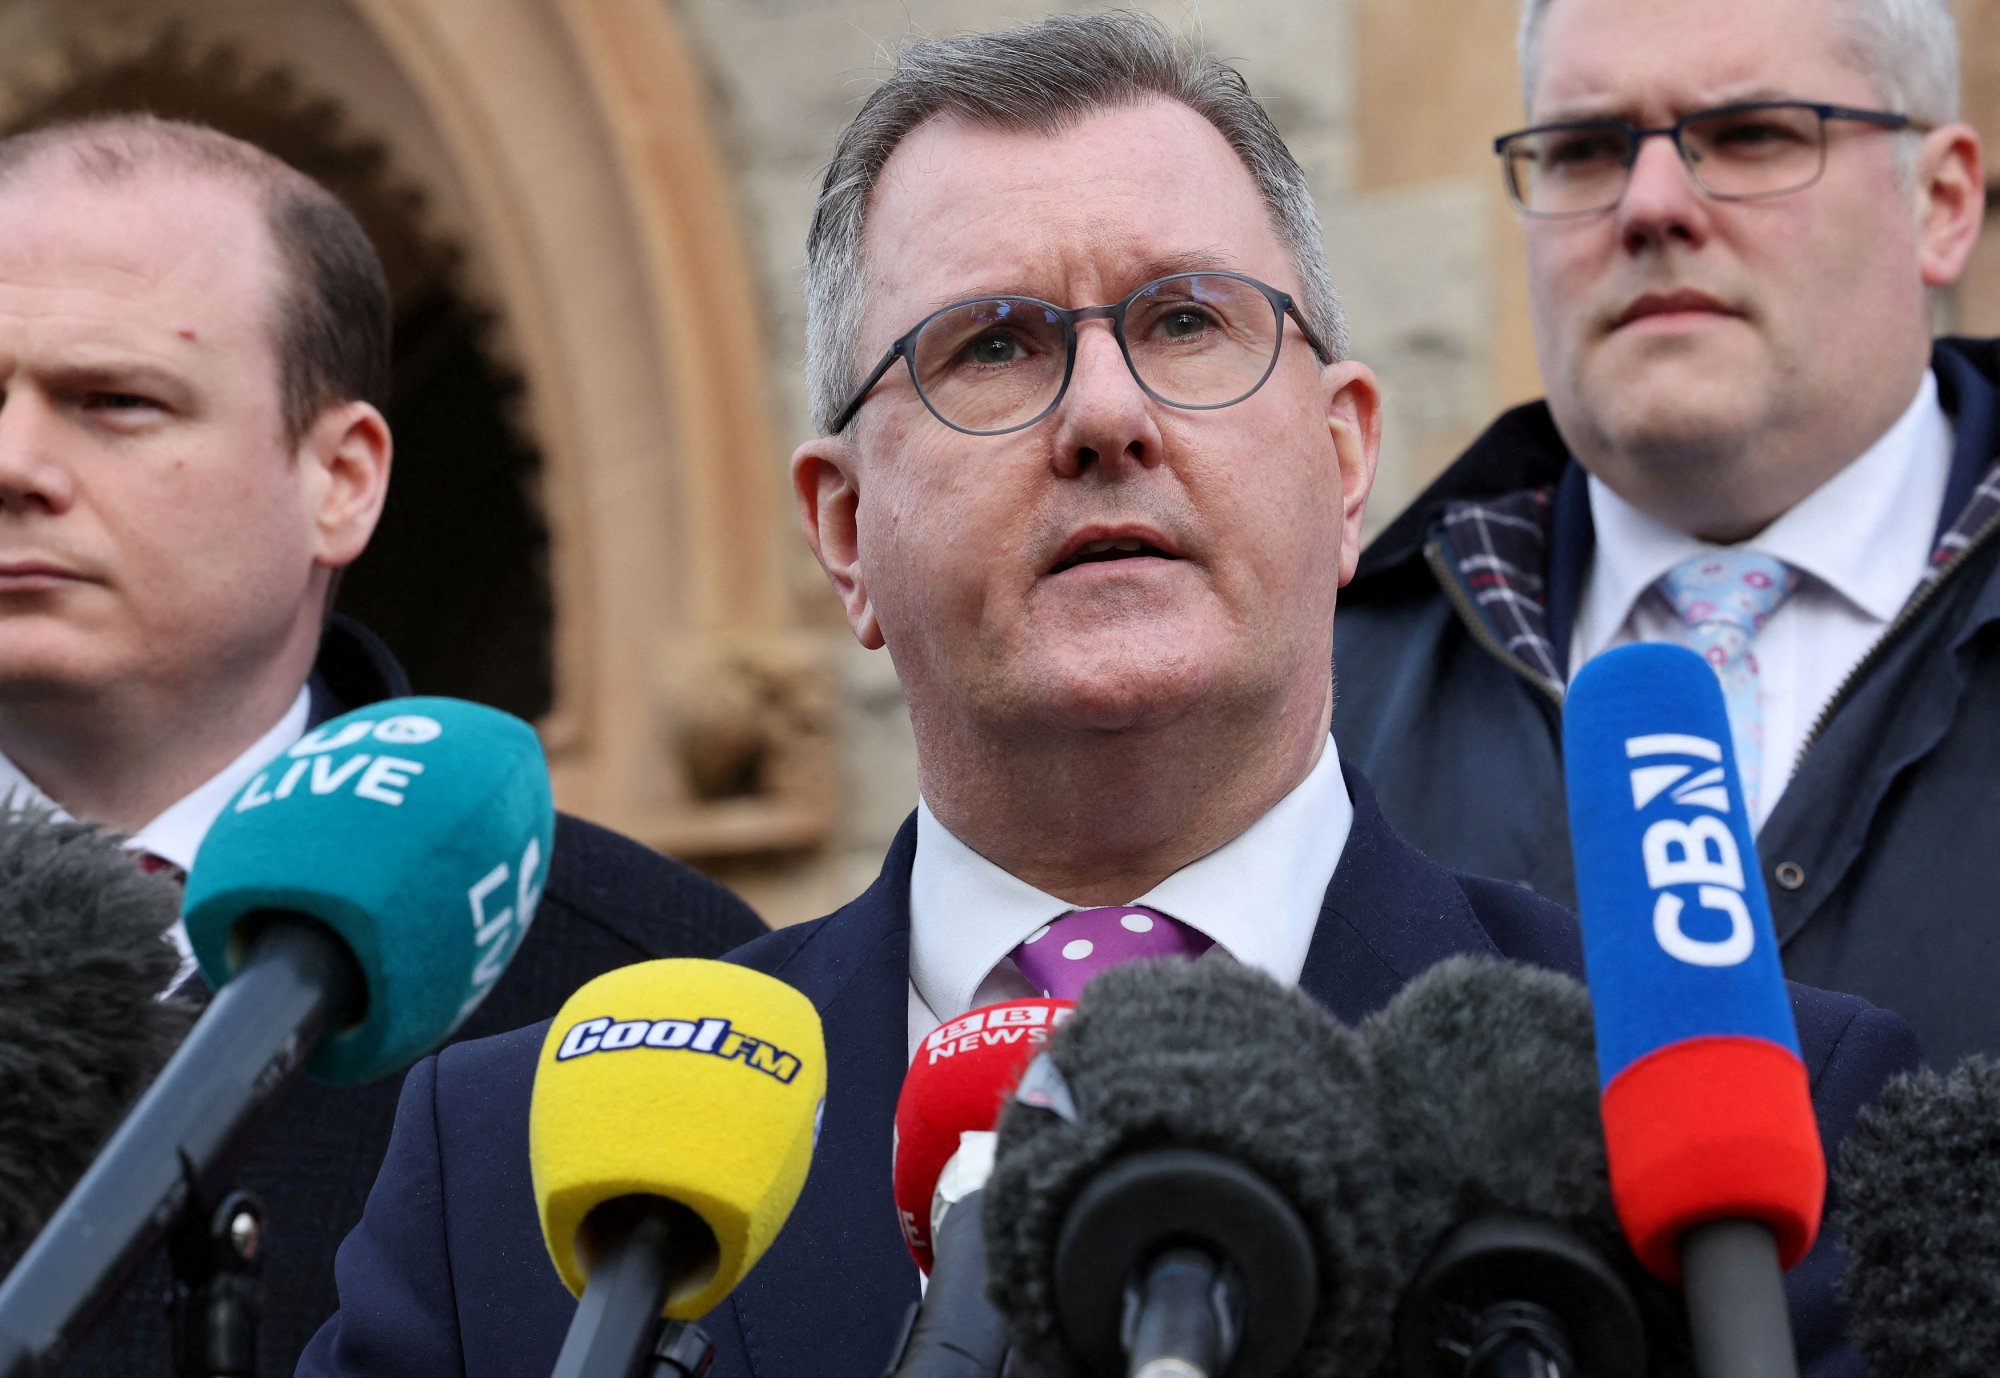 Πολιτικός «σεισμός» στη Βόρεια Ιρλανδία - Κατηγορείται για σεξουαλικά εγκλήματα ο αρχηγός των Δημοκρατικών